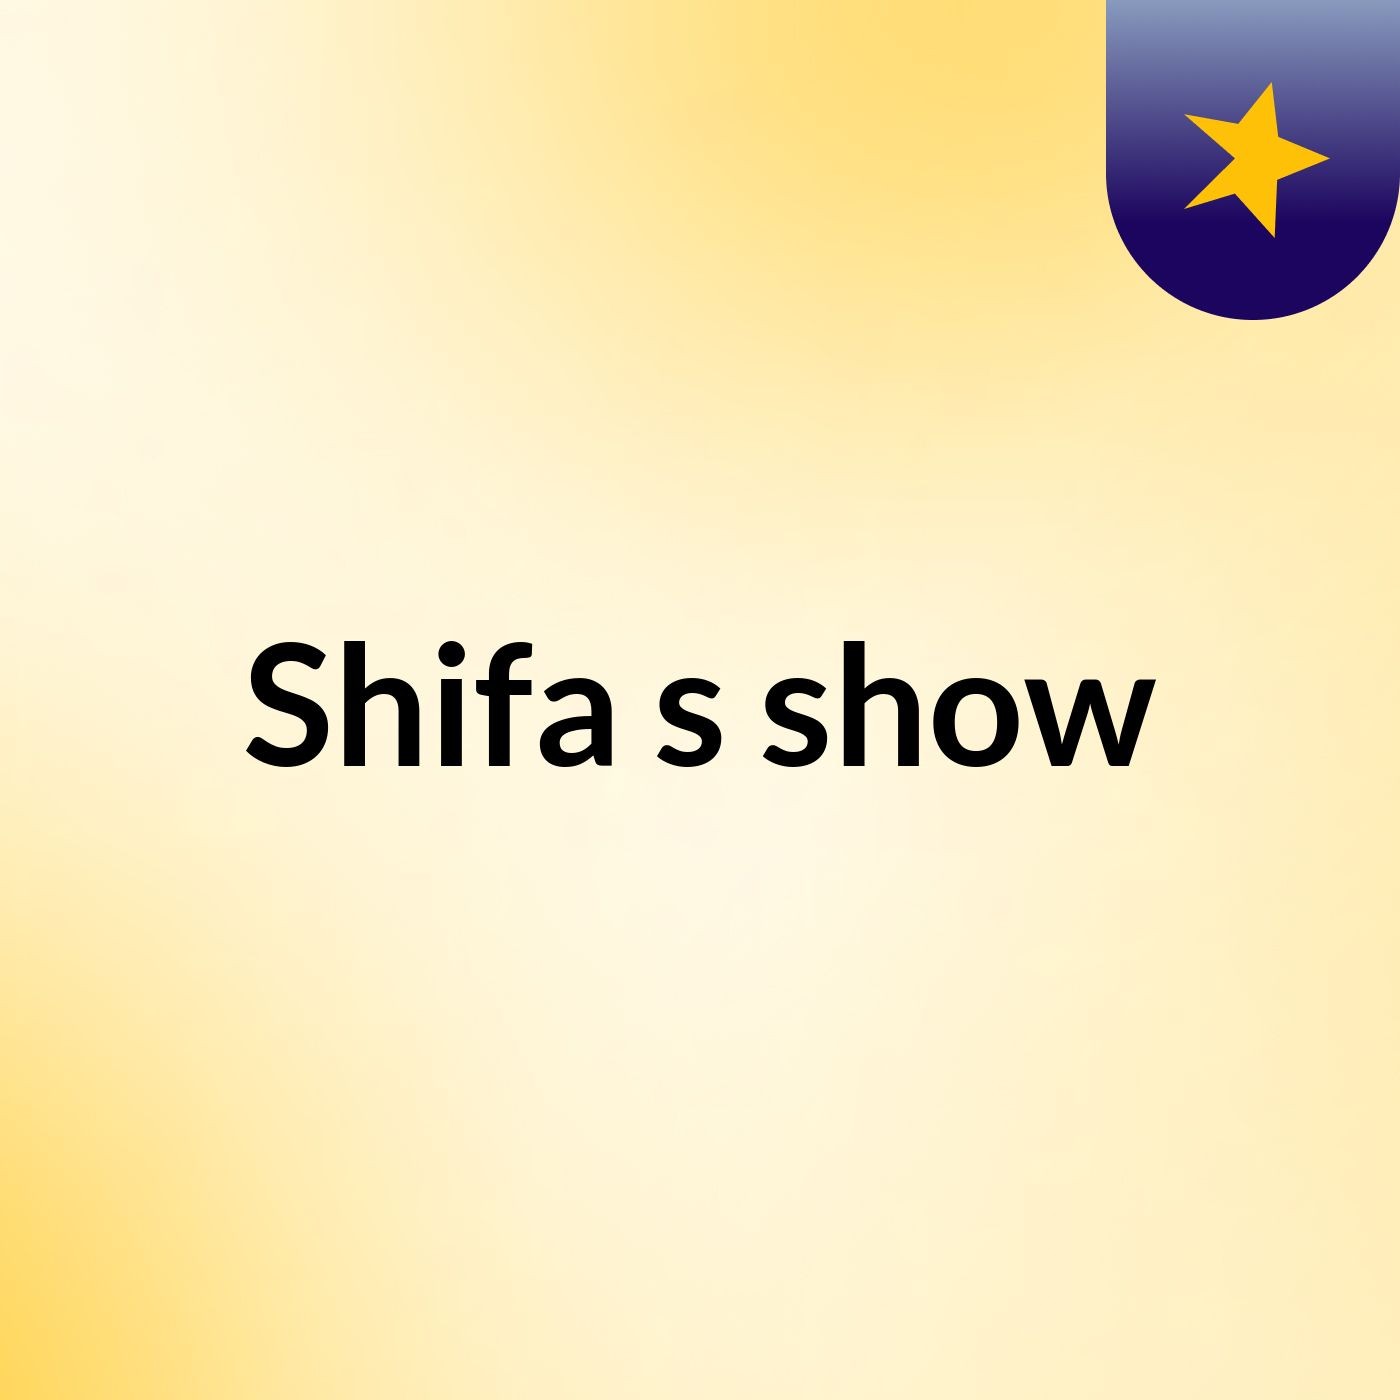 Shifa's show